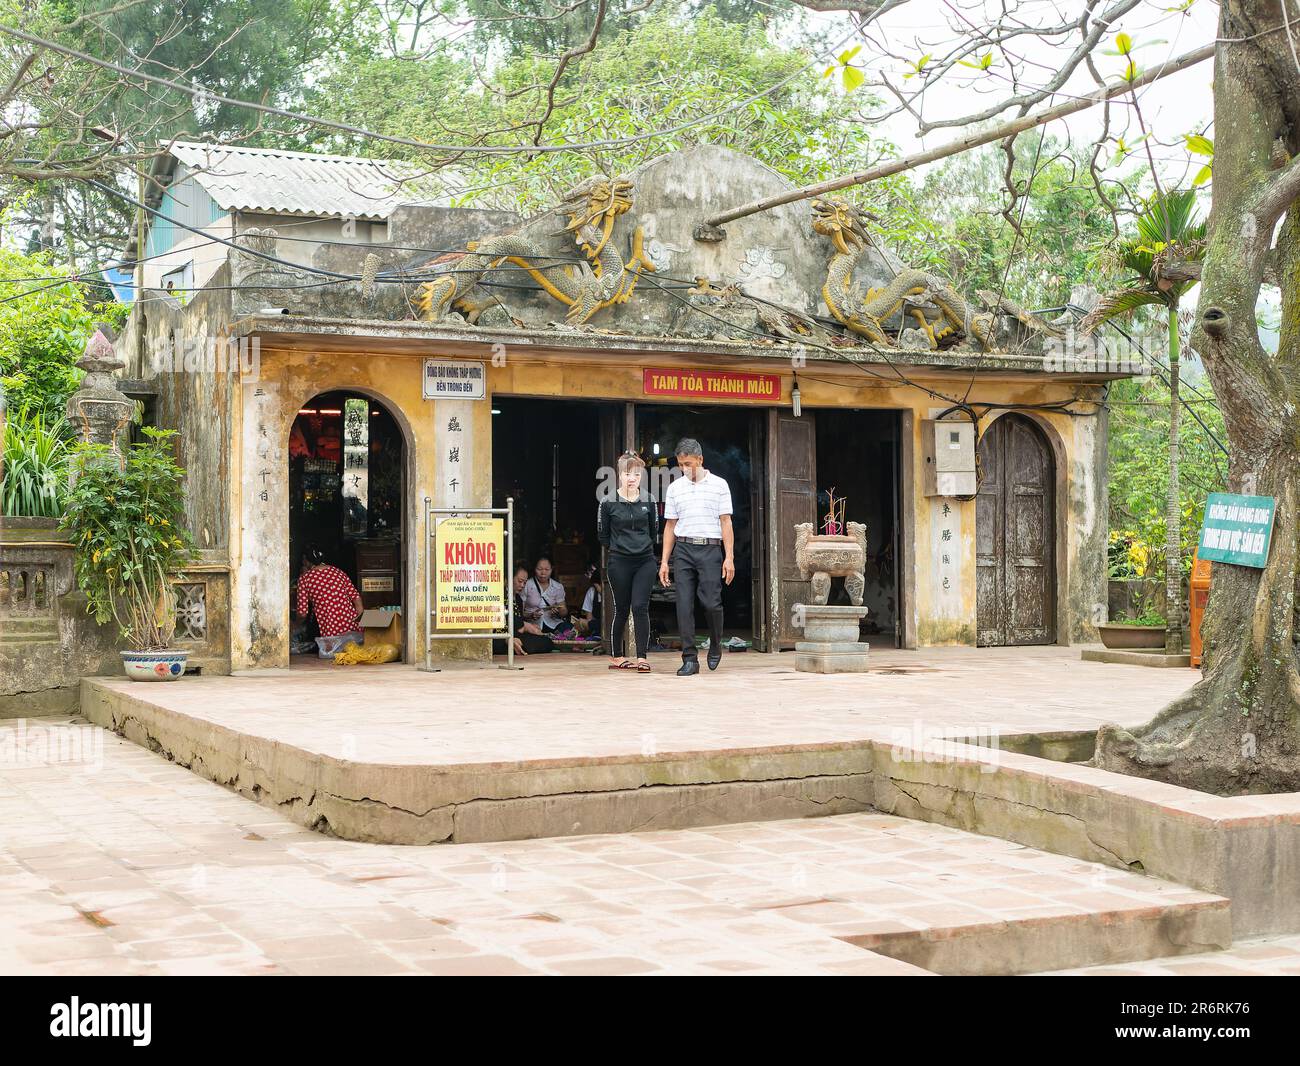 Den Doc Cuoc, Tam Toa Thanh Mau, un petit temple pour Thanh, Thanh Giong à l'extrémité sud de Sam son Beach dans la province de Thanh Hoa au Vietnam. THA Banque D'Images